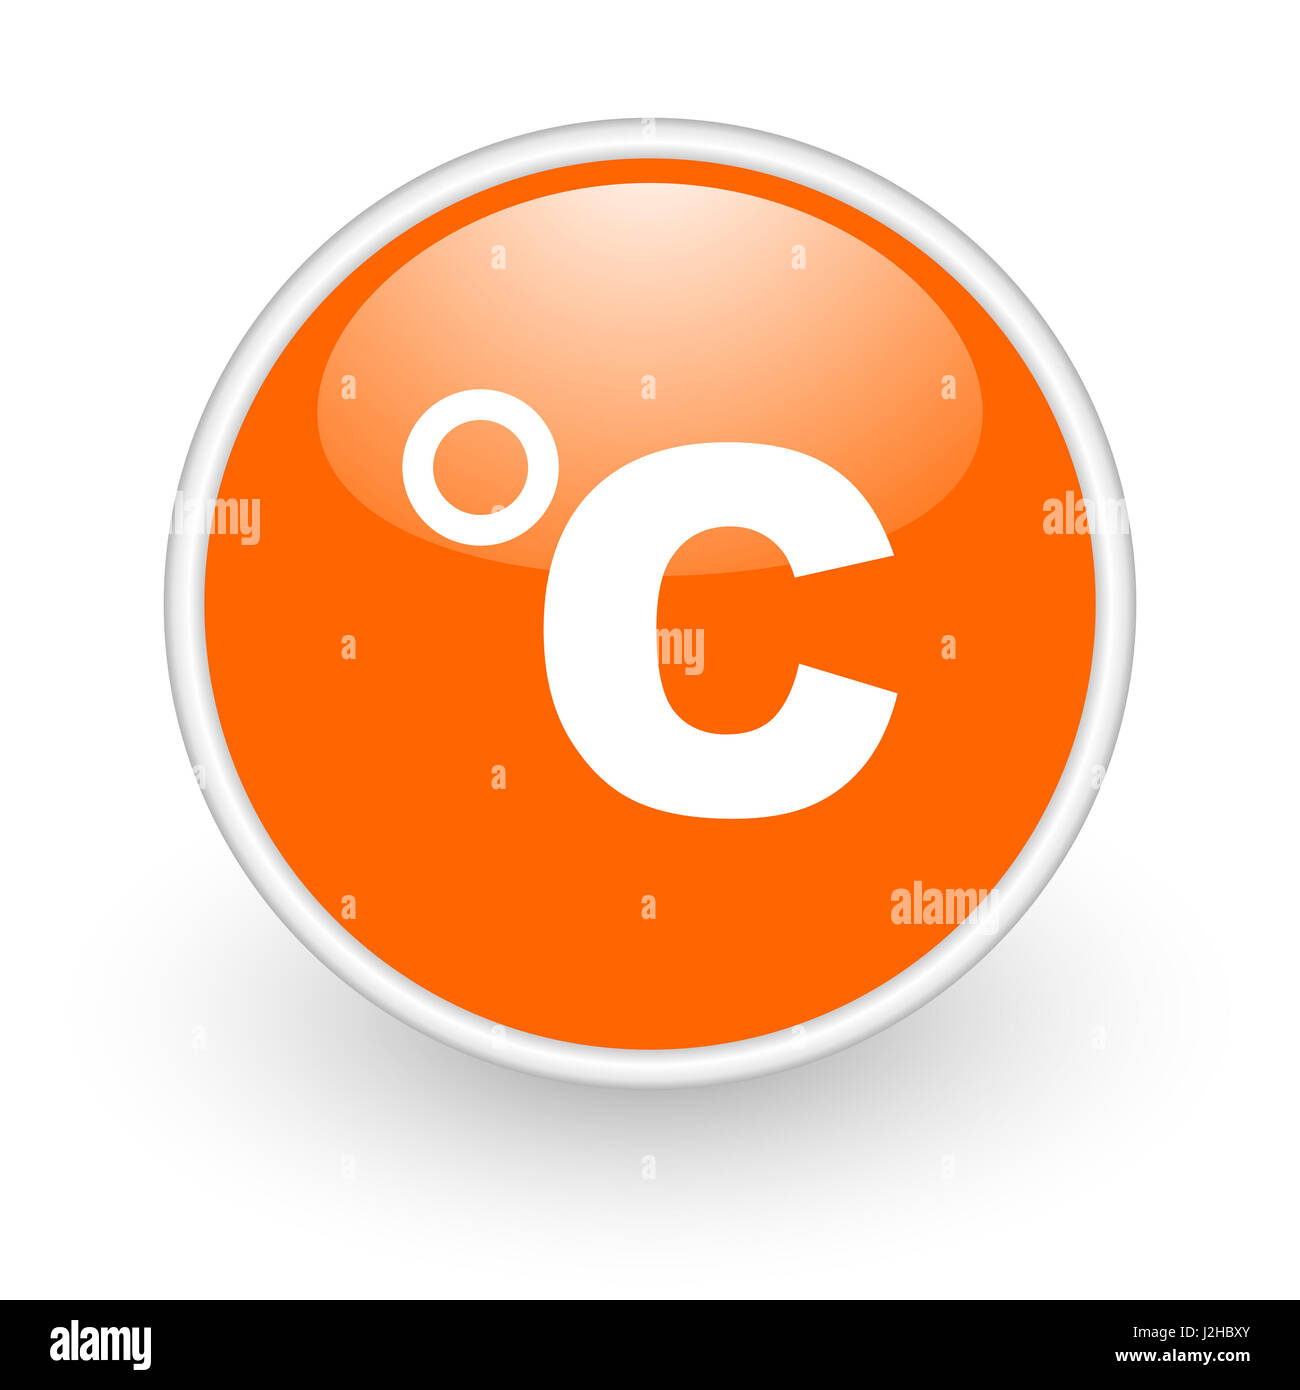 Celsius design moderno di colore arancione lucido web, icona su sfondo bianco. Foto Stock